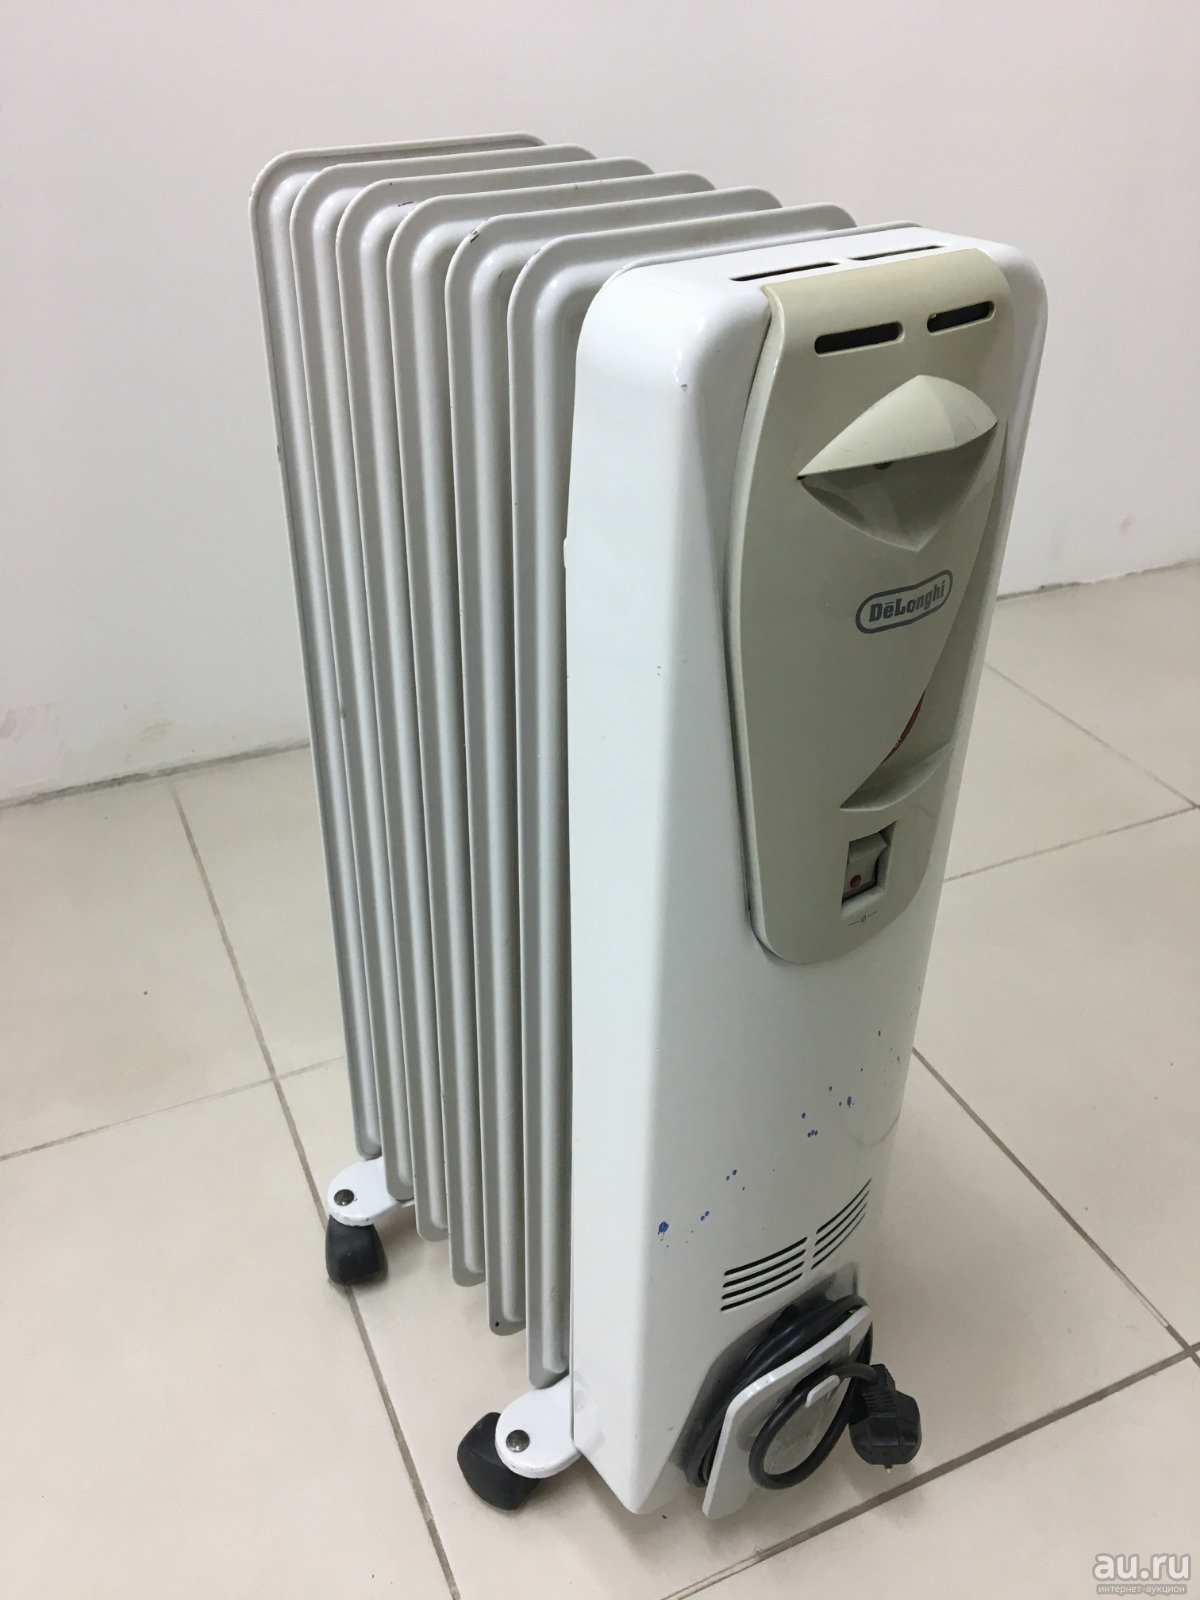 Масляный радиатор delonghi gs 770715 (spb00000932) купить за 2319 руб в екатеринбурге, отзывы, видео обзоры и характеристики